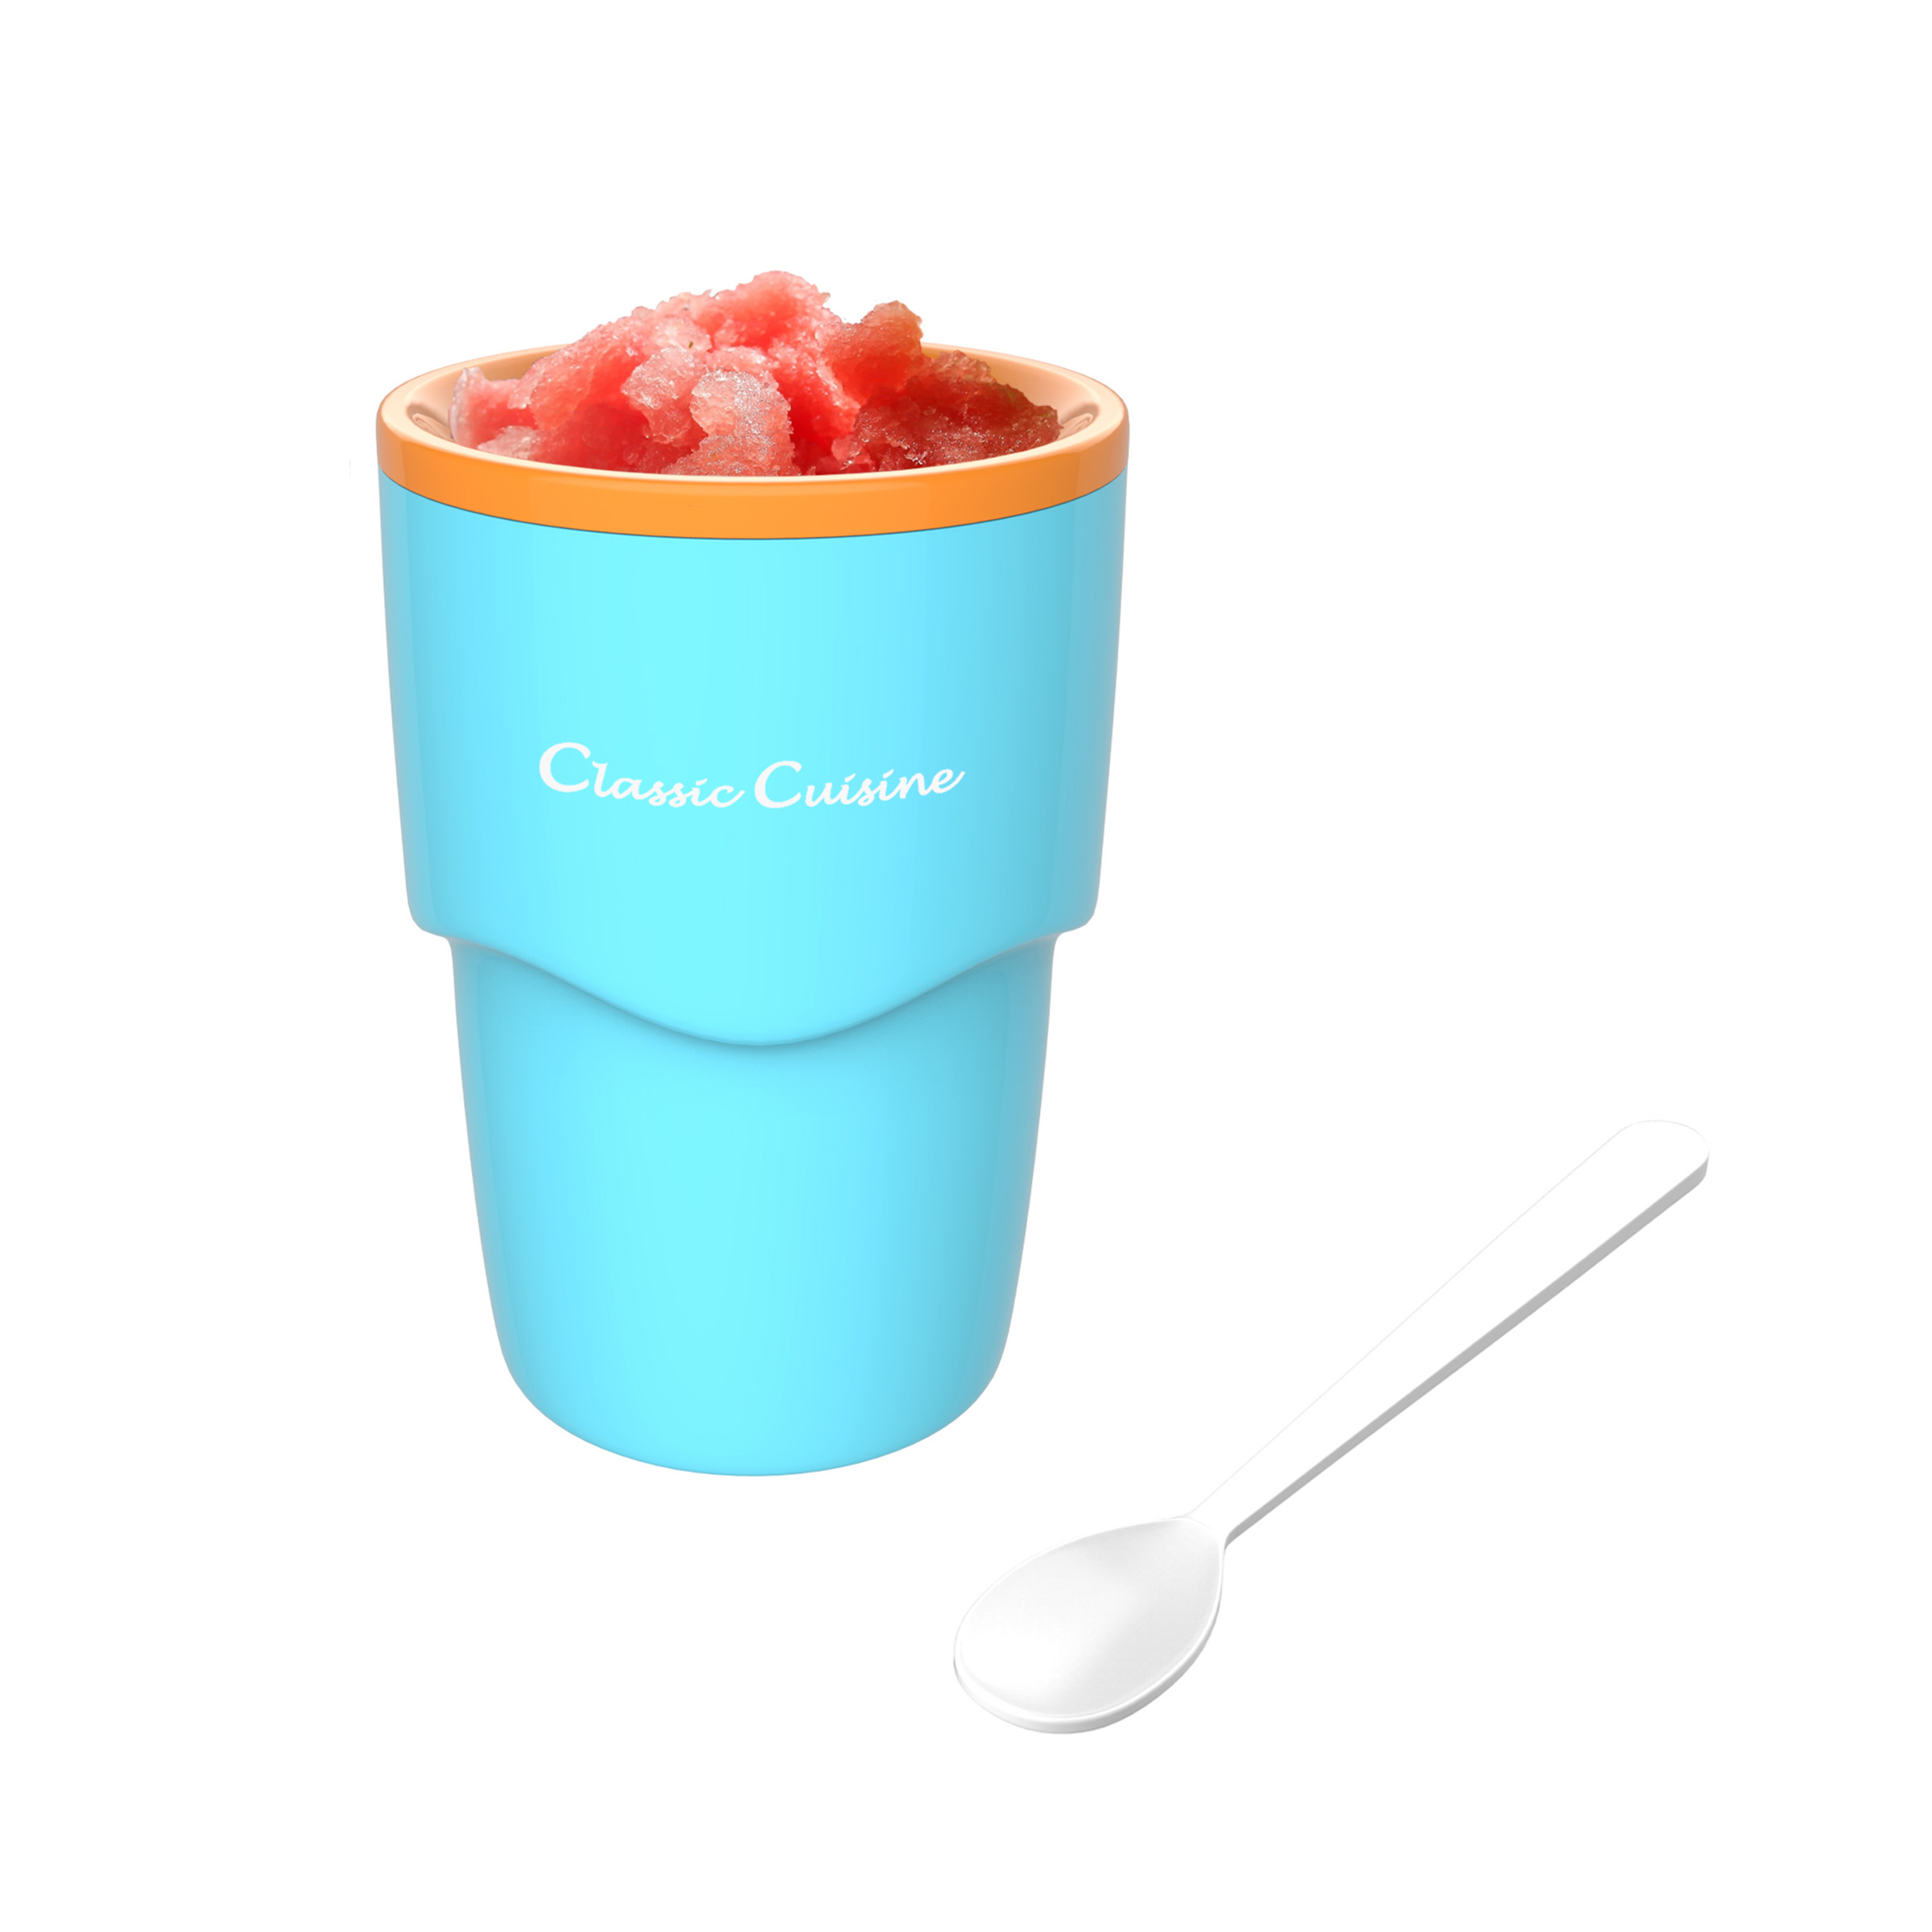 Slushy Frozen Icy Maker Cup Slurpee Smoothie Summer Drink Juice Cup Healthy